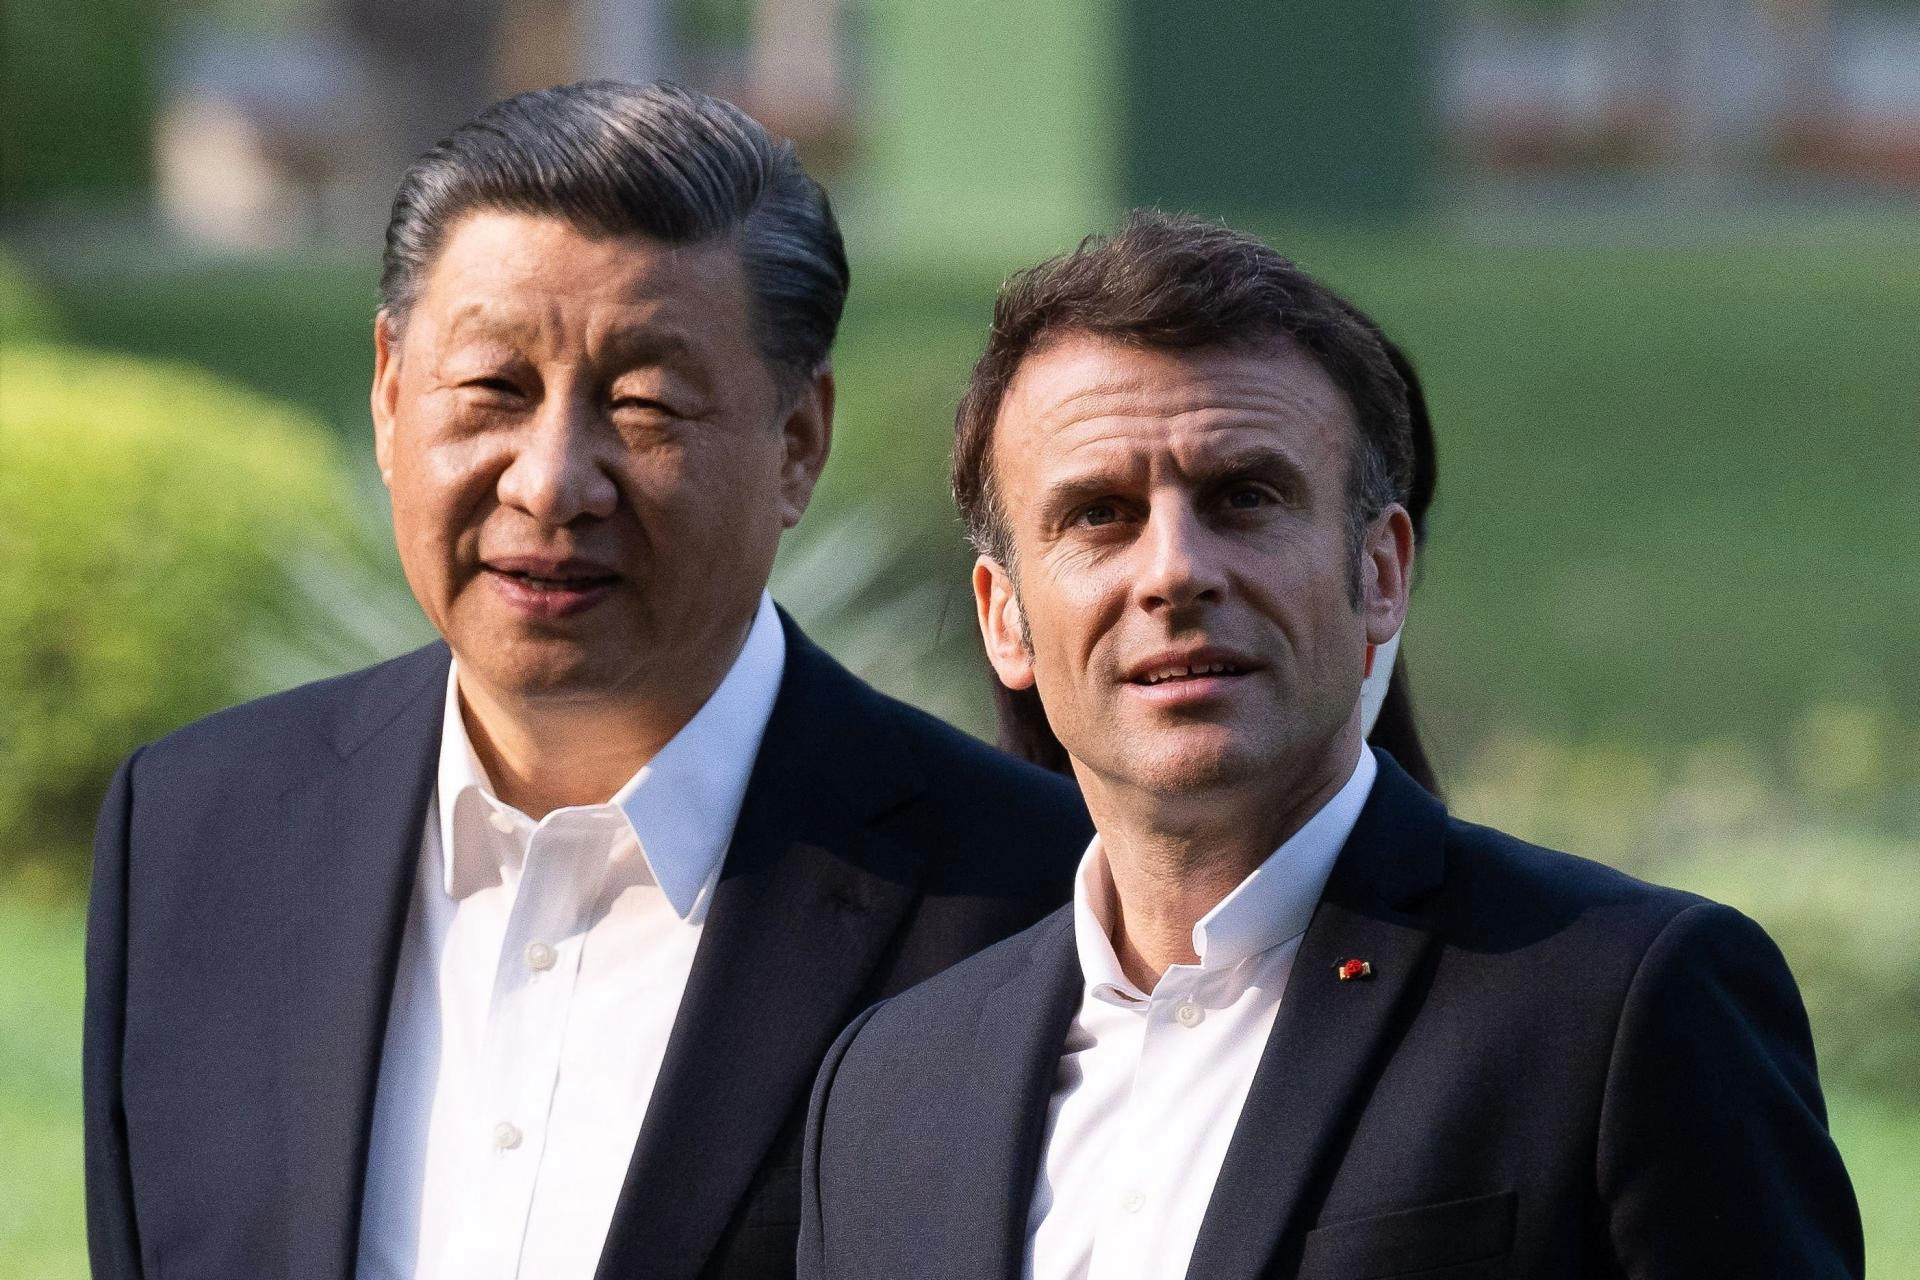 Xi nakon pet godina u Europi, stiže u jedine tri države koje su mu sklone